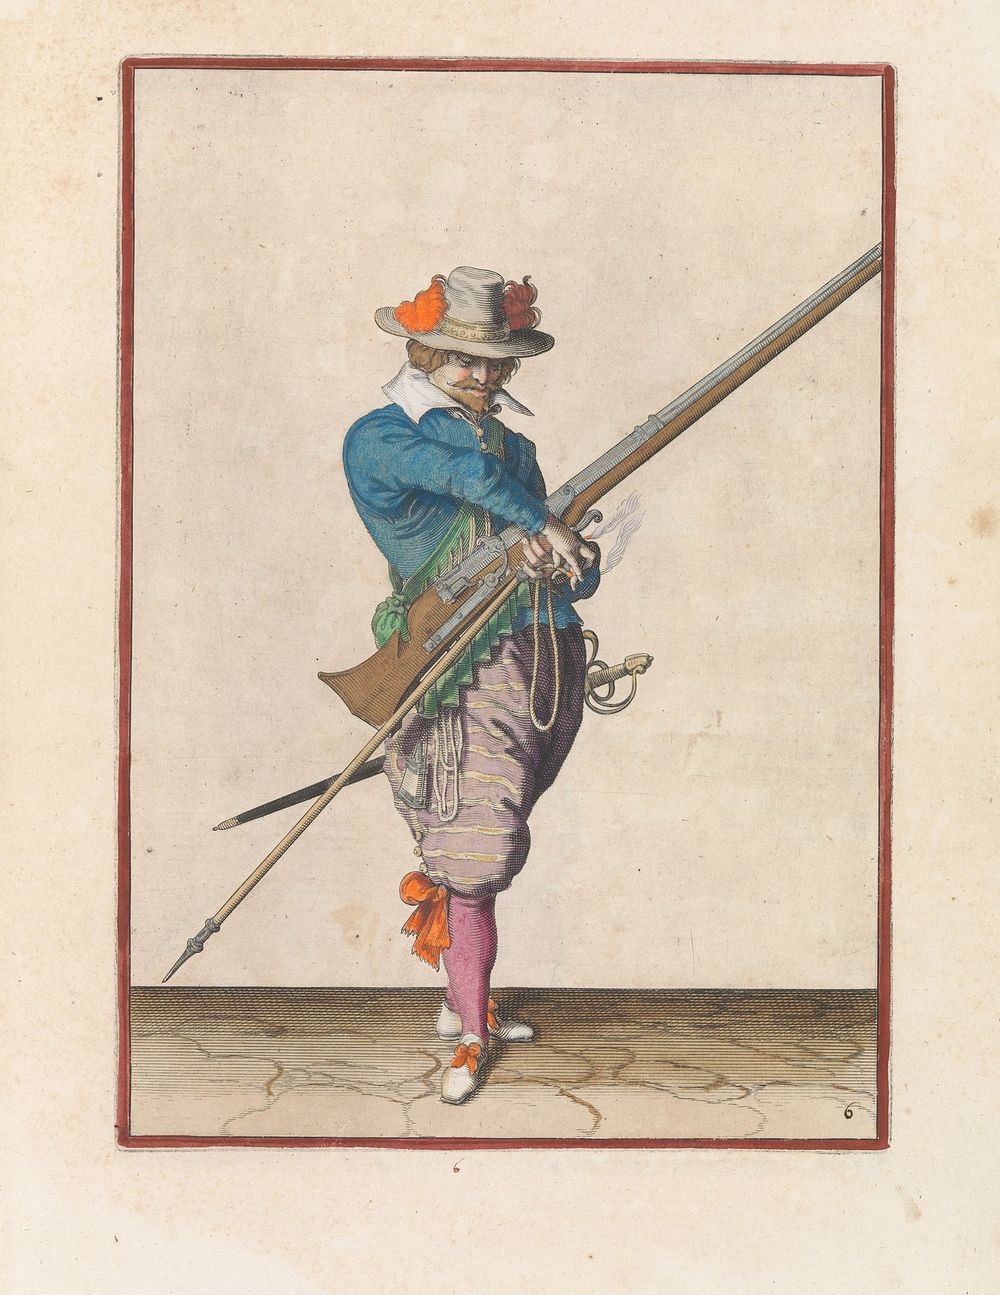 Soldaat met een musket die zijn lont pakt (c. 1597 - 1607) by Jacques de Gheyn II and Jacques de Gheyn II